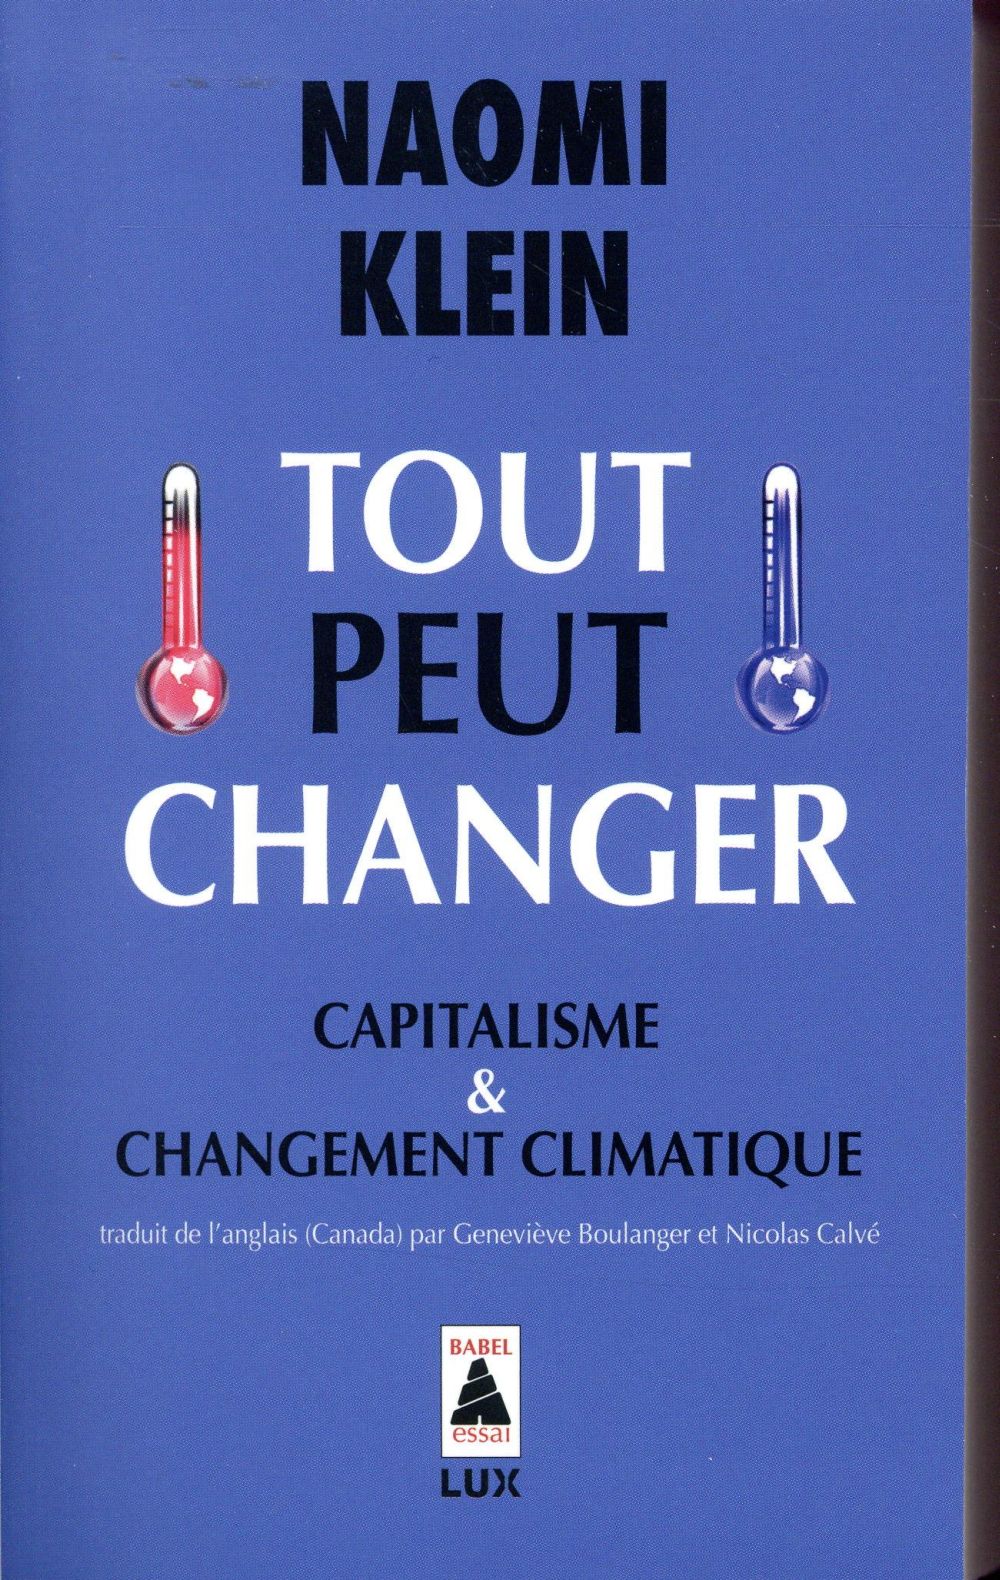 Couverture du livre TOUT PEUT CHANGER - CAPITALISME ET CHANGEMENT CLIMATIQUE